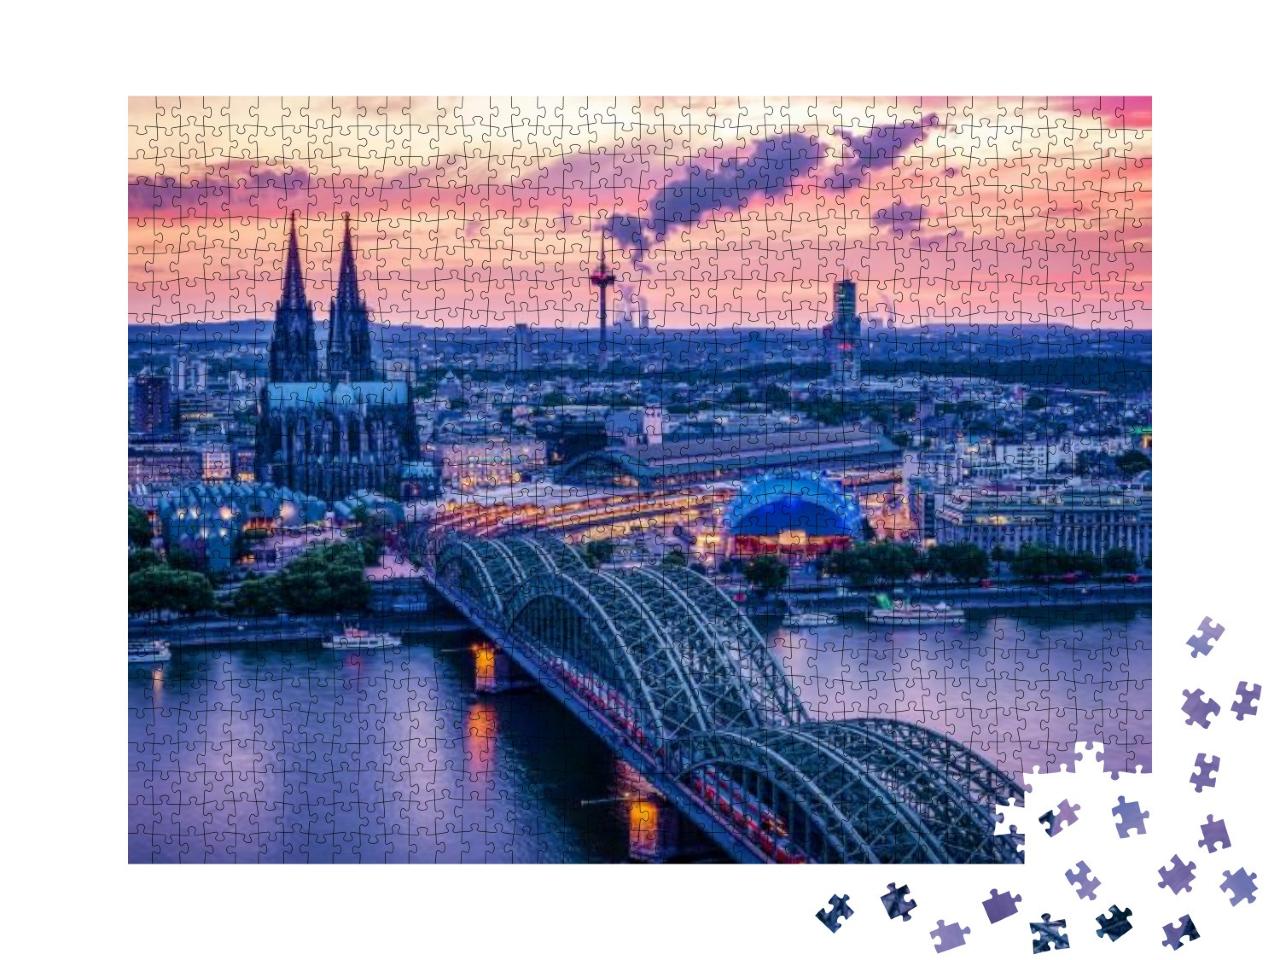 Puzzle 1000 Teile „Kölner Skyline bei Sonnenuntergang, Deutschland“